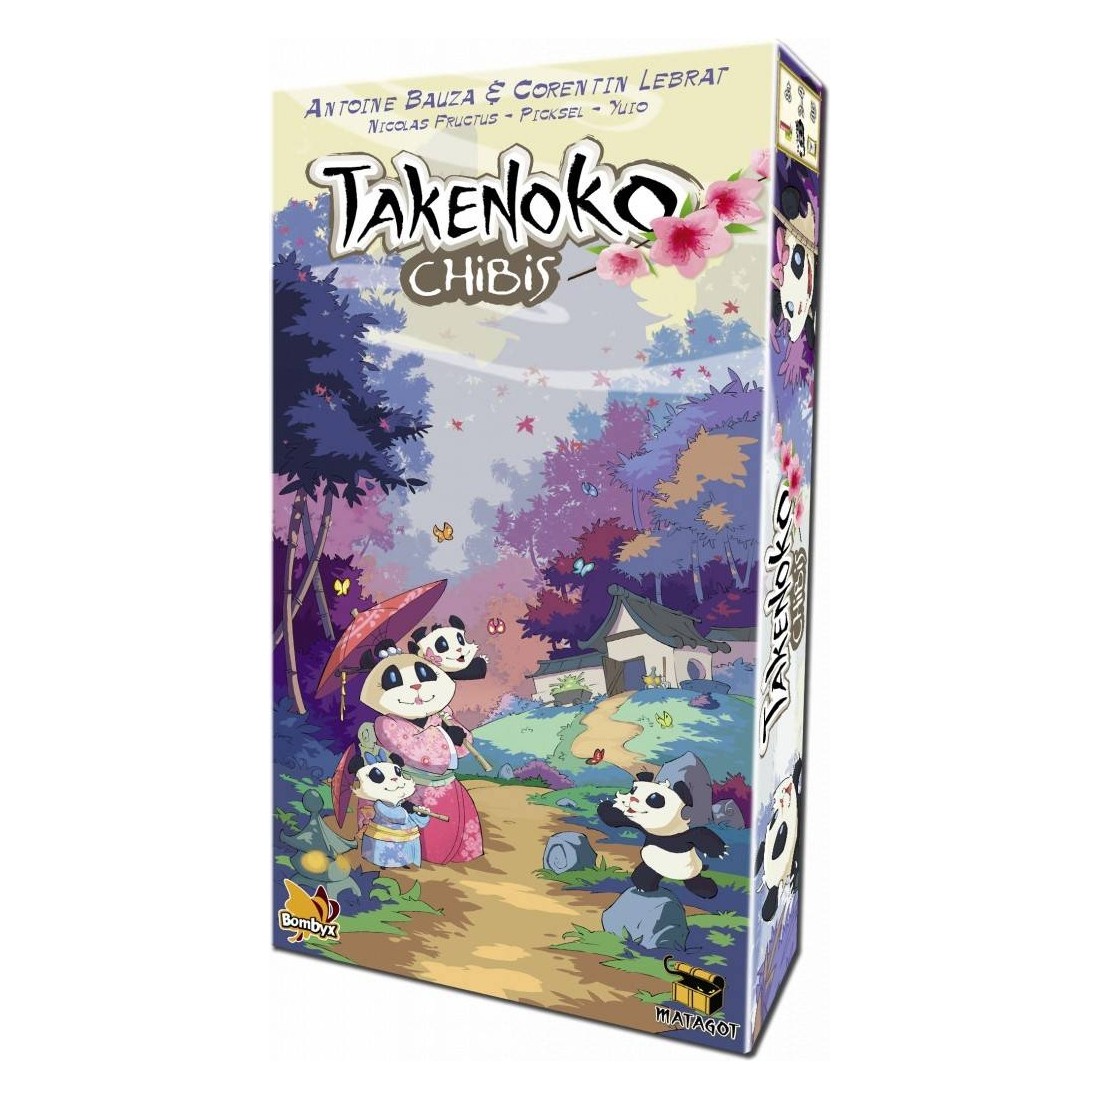 Takenoko - Jeux de stratégie expert - Jeux de stratégie